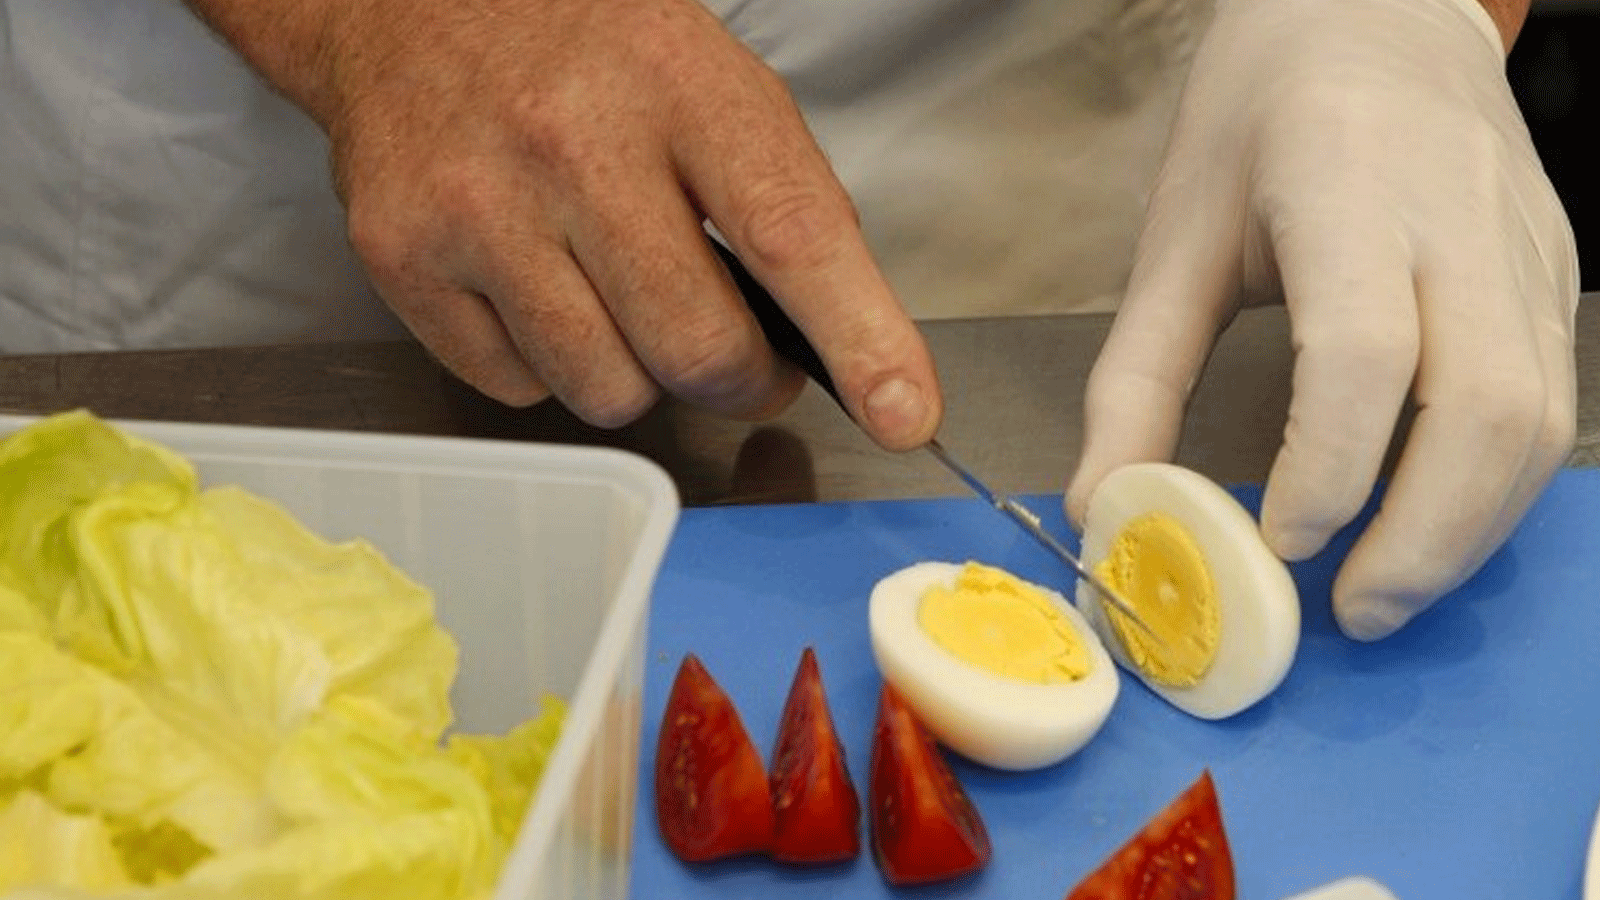 البيض غني بالبروتين ومفيد لوجبة الصباح